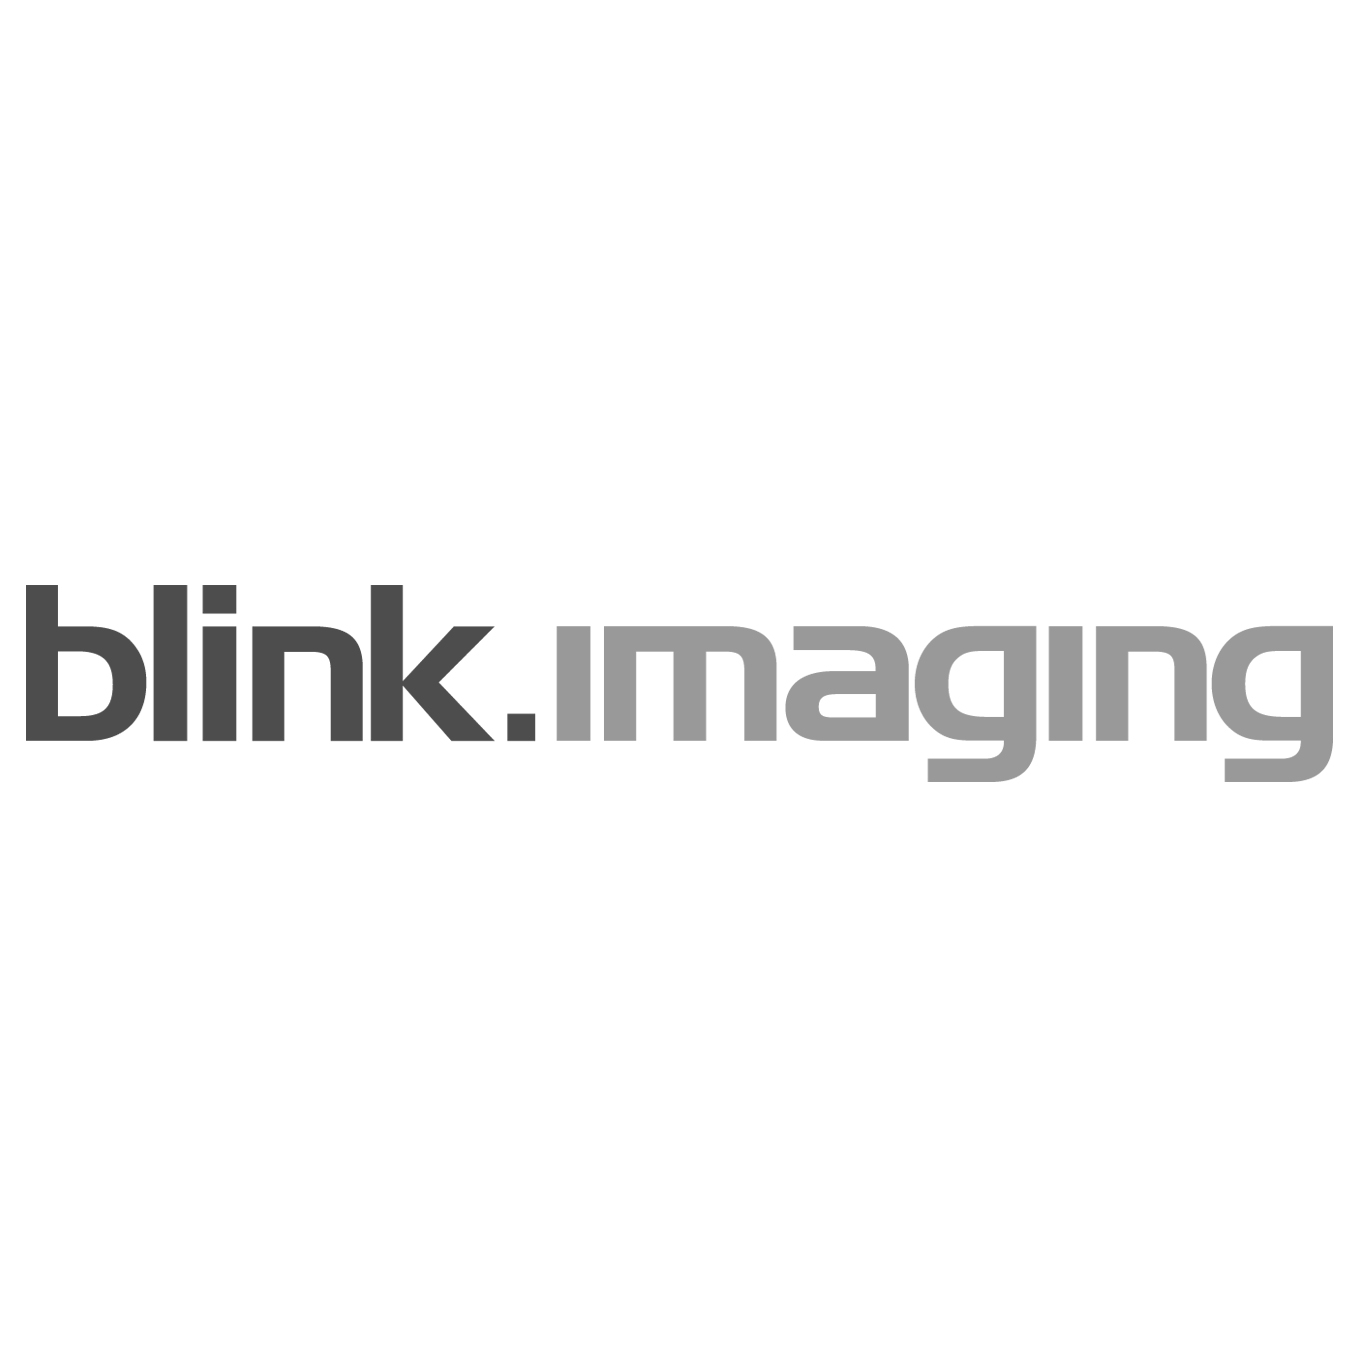 Blink imaging - Munich